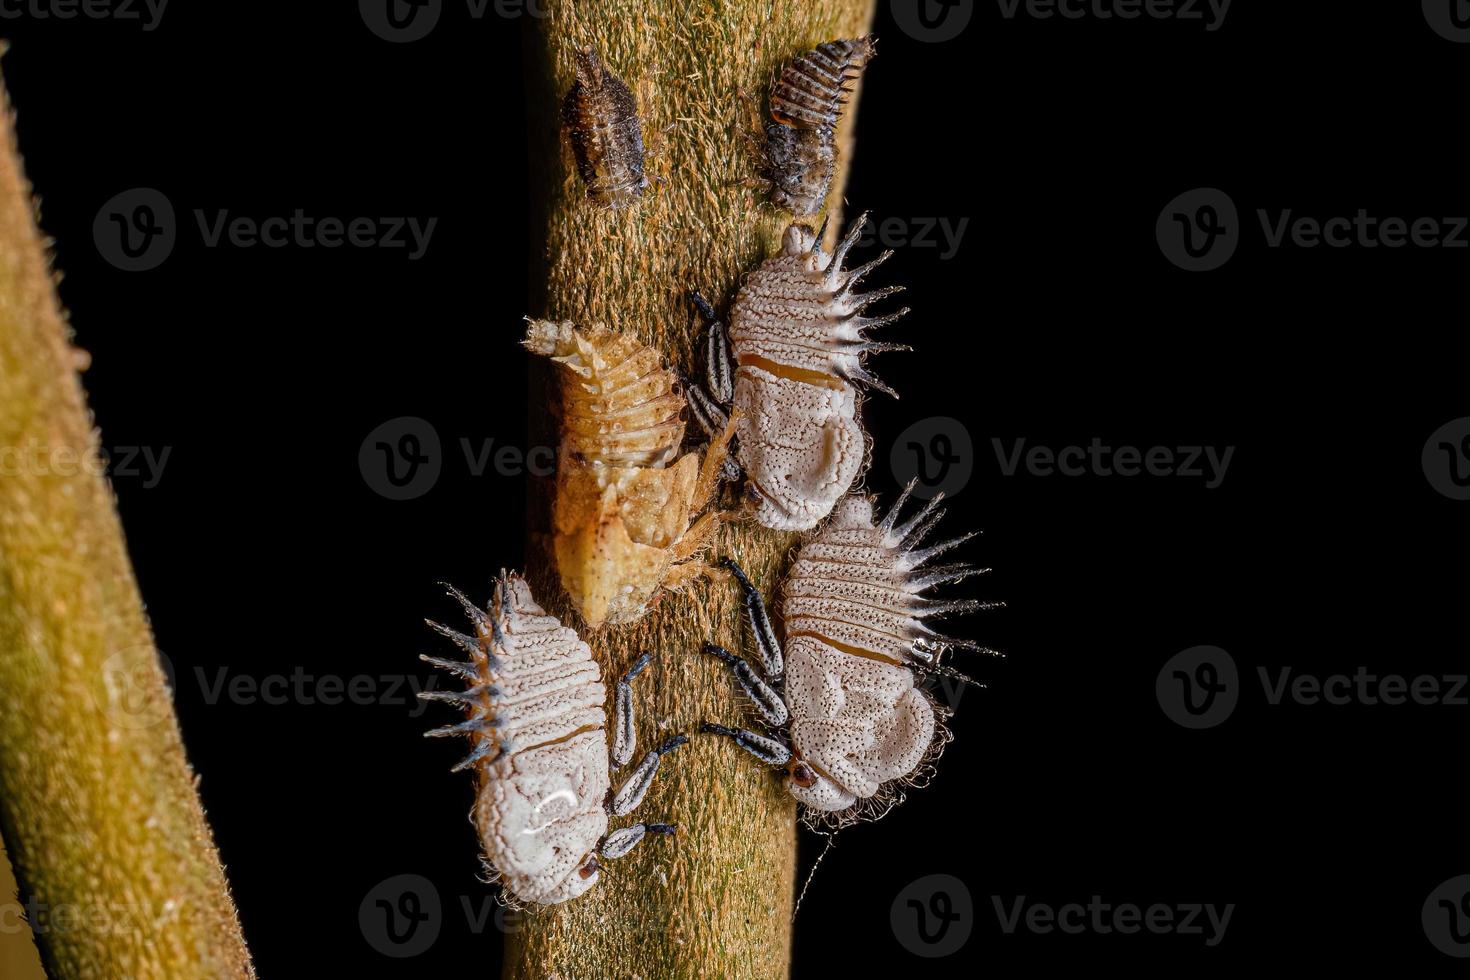 nymphe typique des cicadelles photo